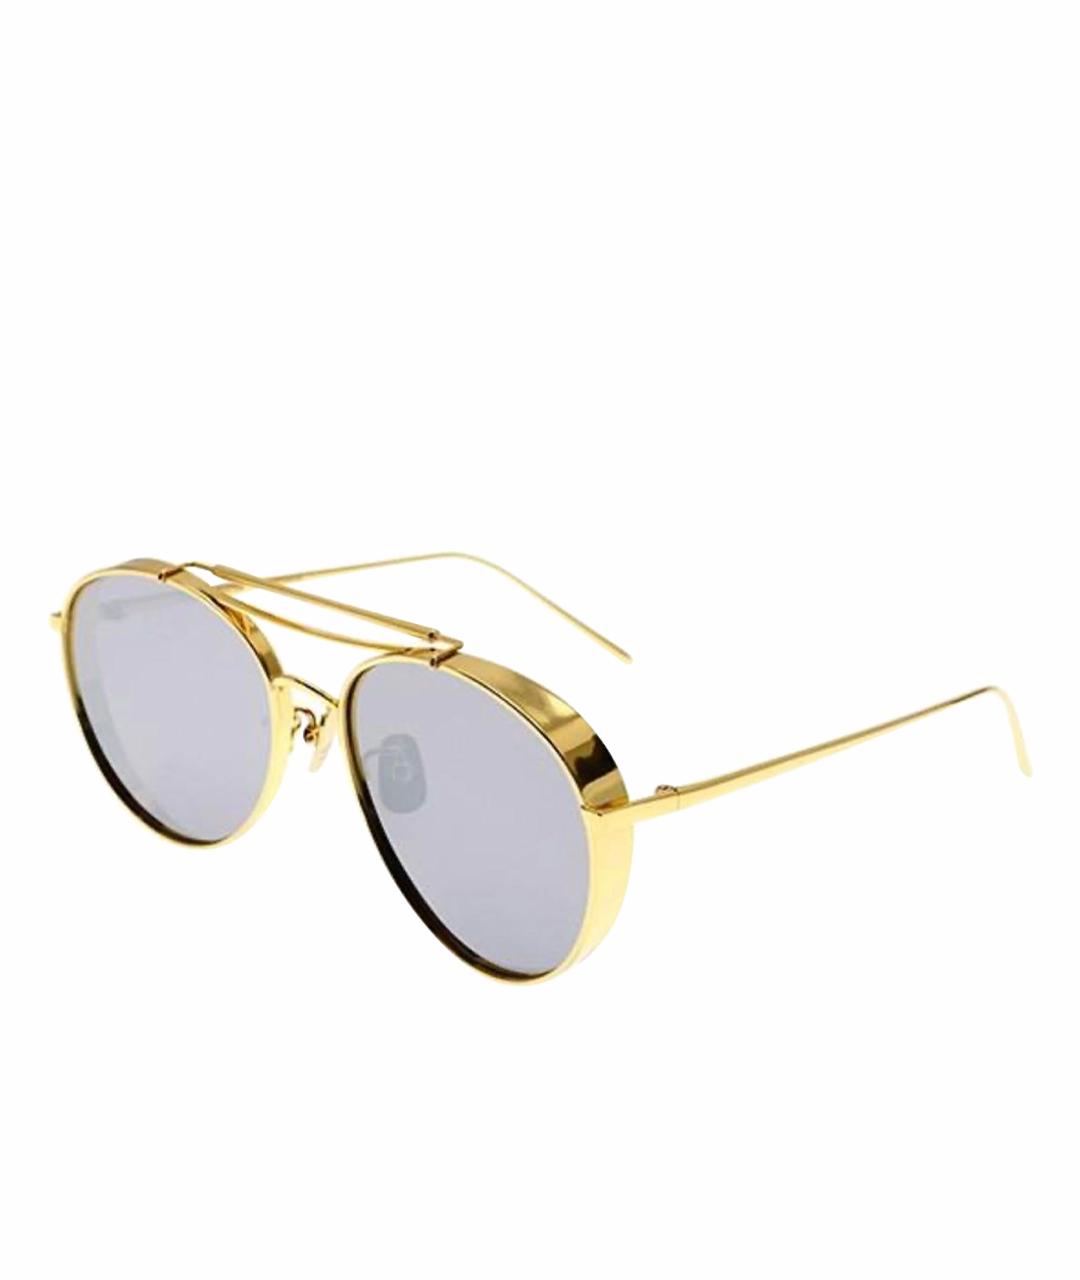 GENTLE MONSTER Золотые солнцезащитные очки, фото 1